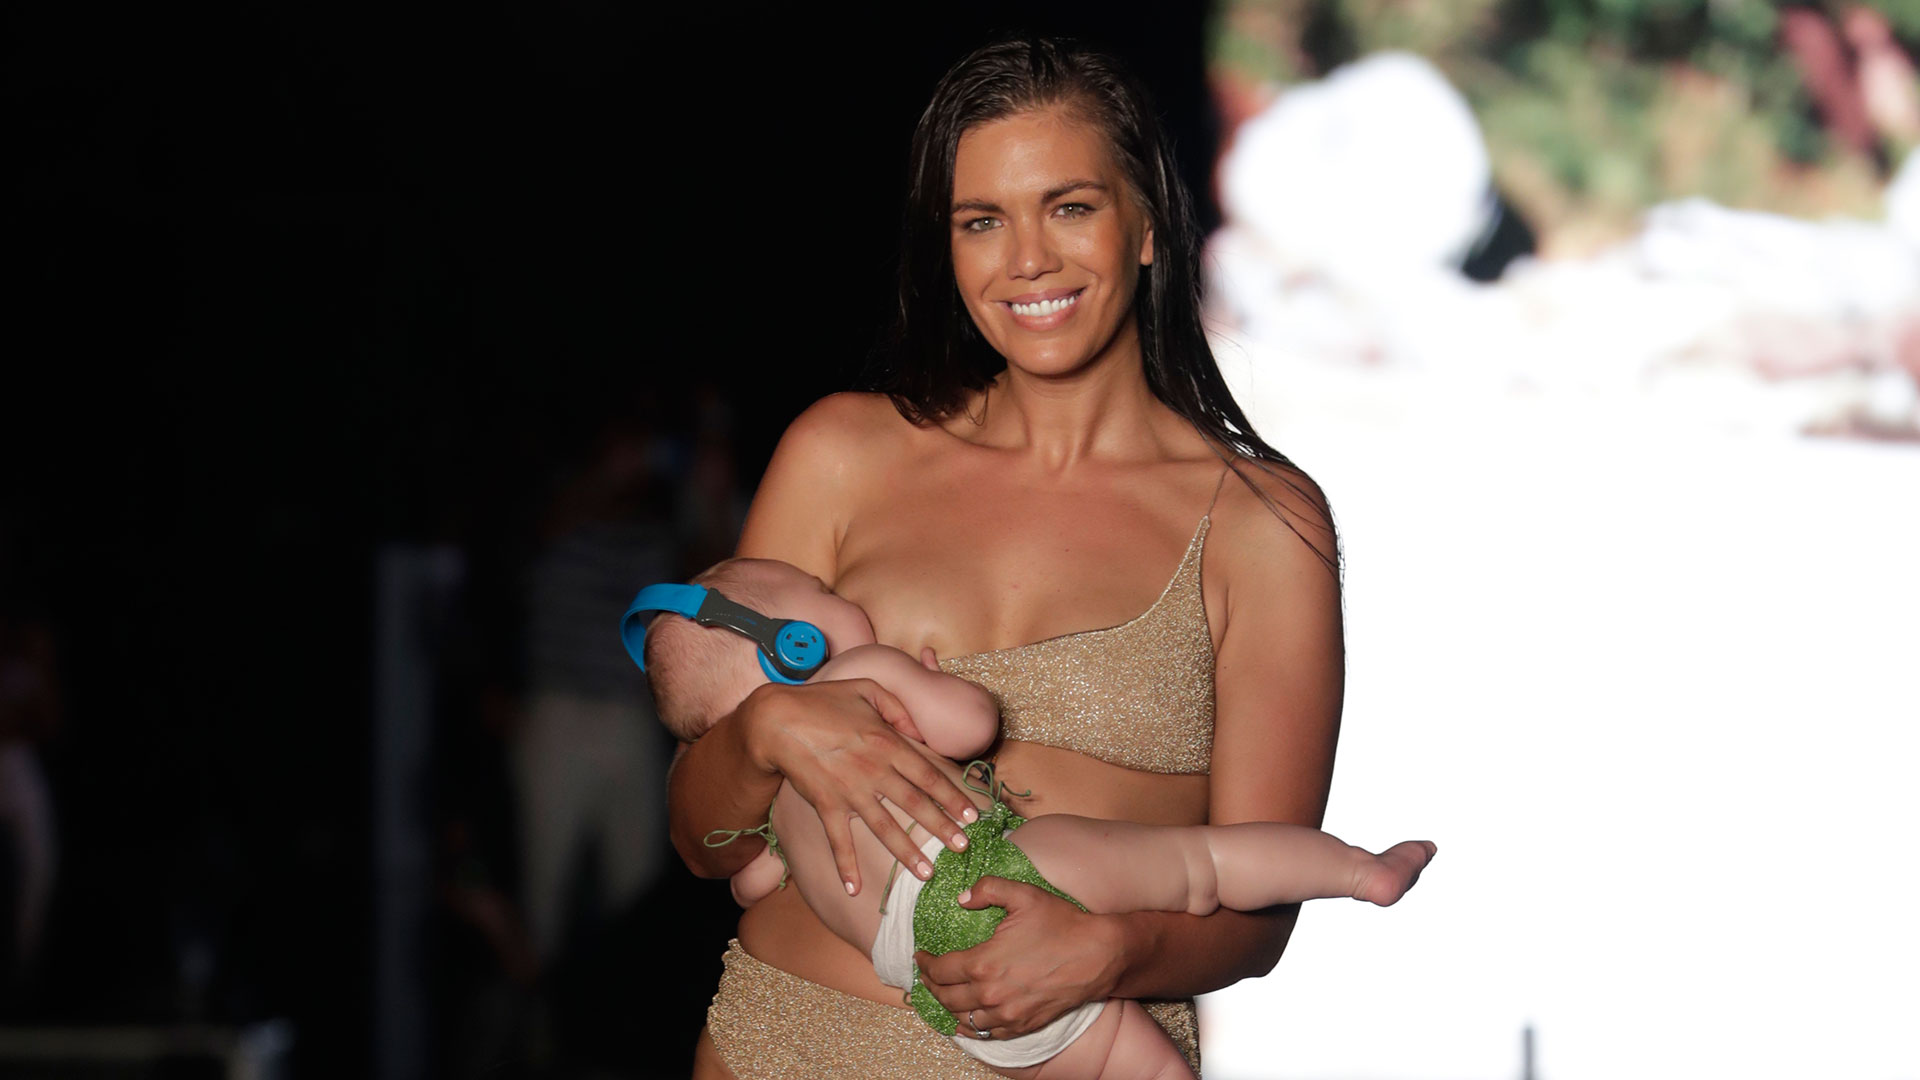 La modelo Mara Martin causa sensación en Miami por desfilar dando el pecho a su bebé